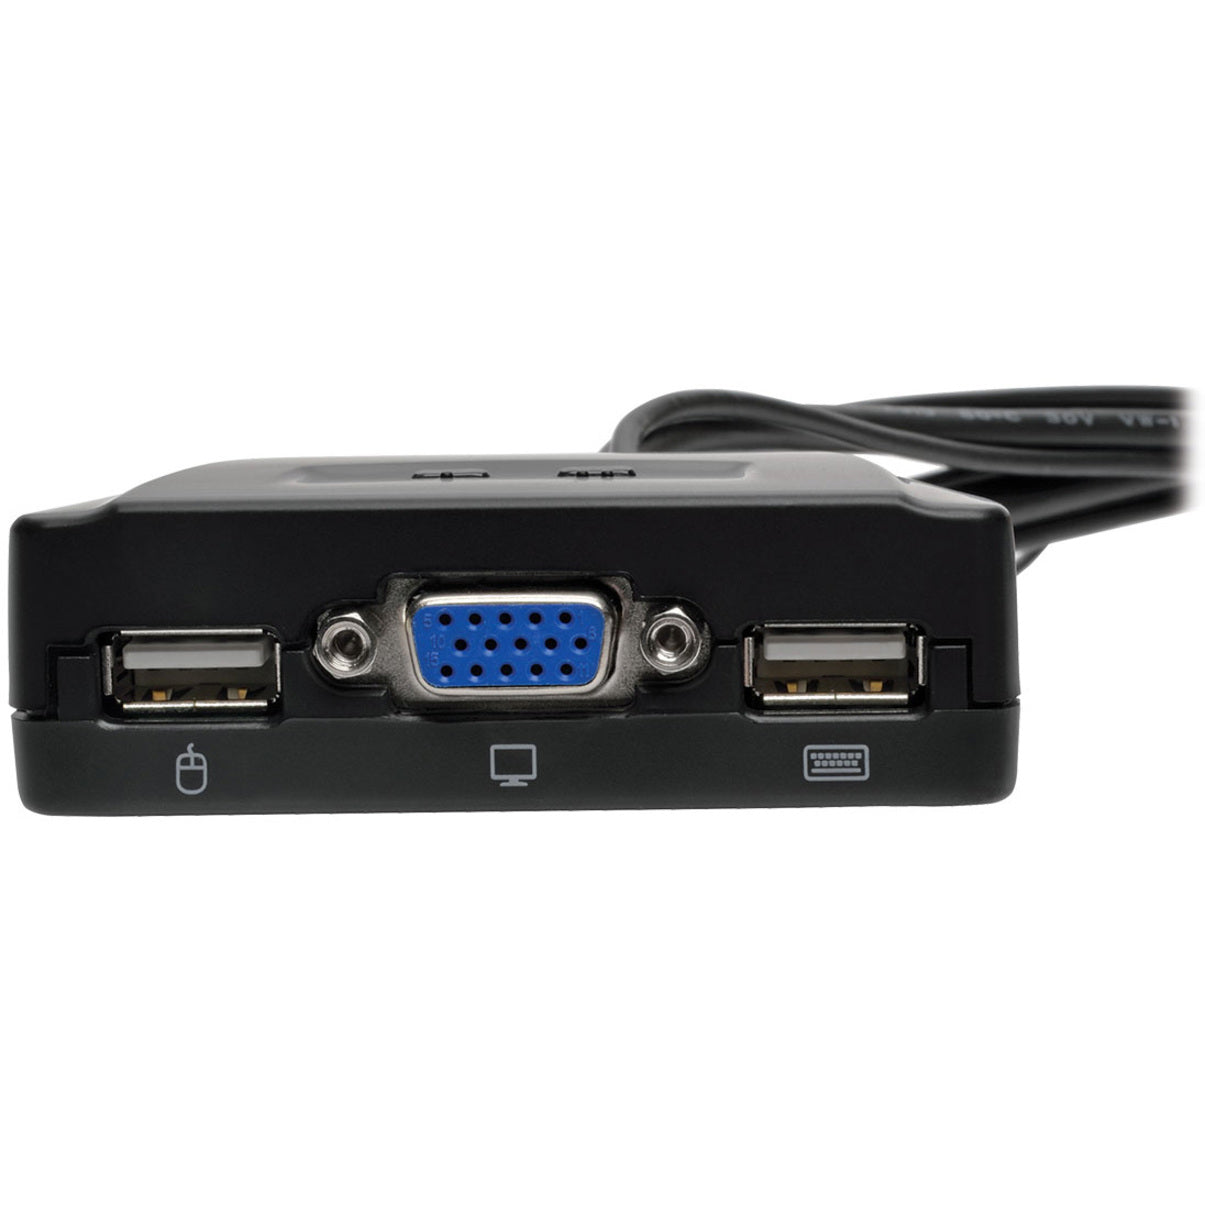 Tripp Lite B032-VU2 2-Puerto USB/VGA Cable KVM Switch con Cables y Compartir Periférico USB Resolución 2048 x 1536 Garantía de 3 Años. Marca: Tripp Lite Translate "Tripp Lite": Tripp Lite